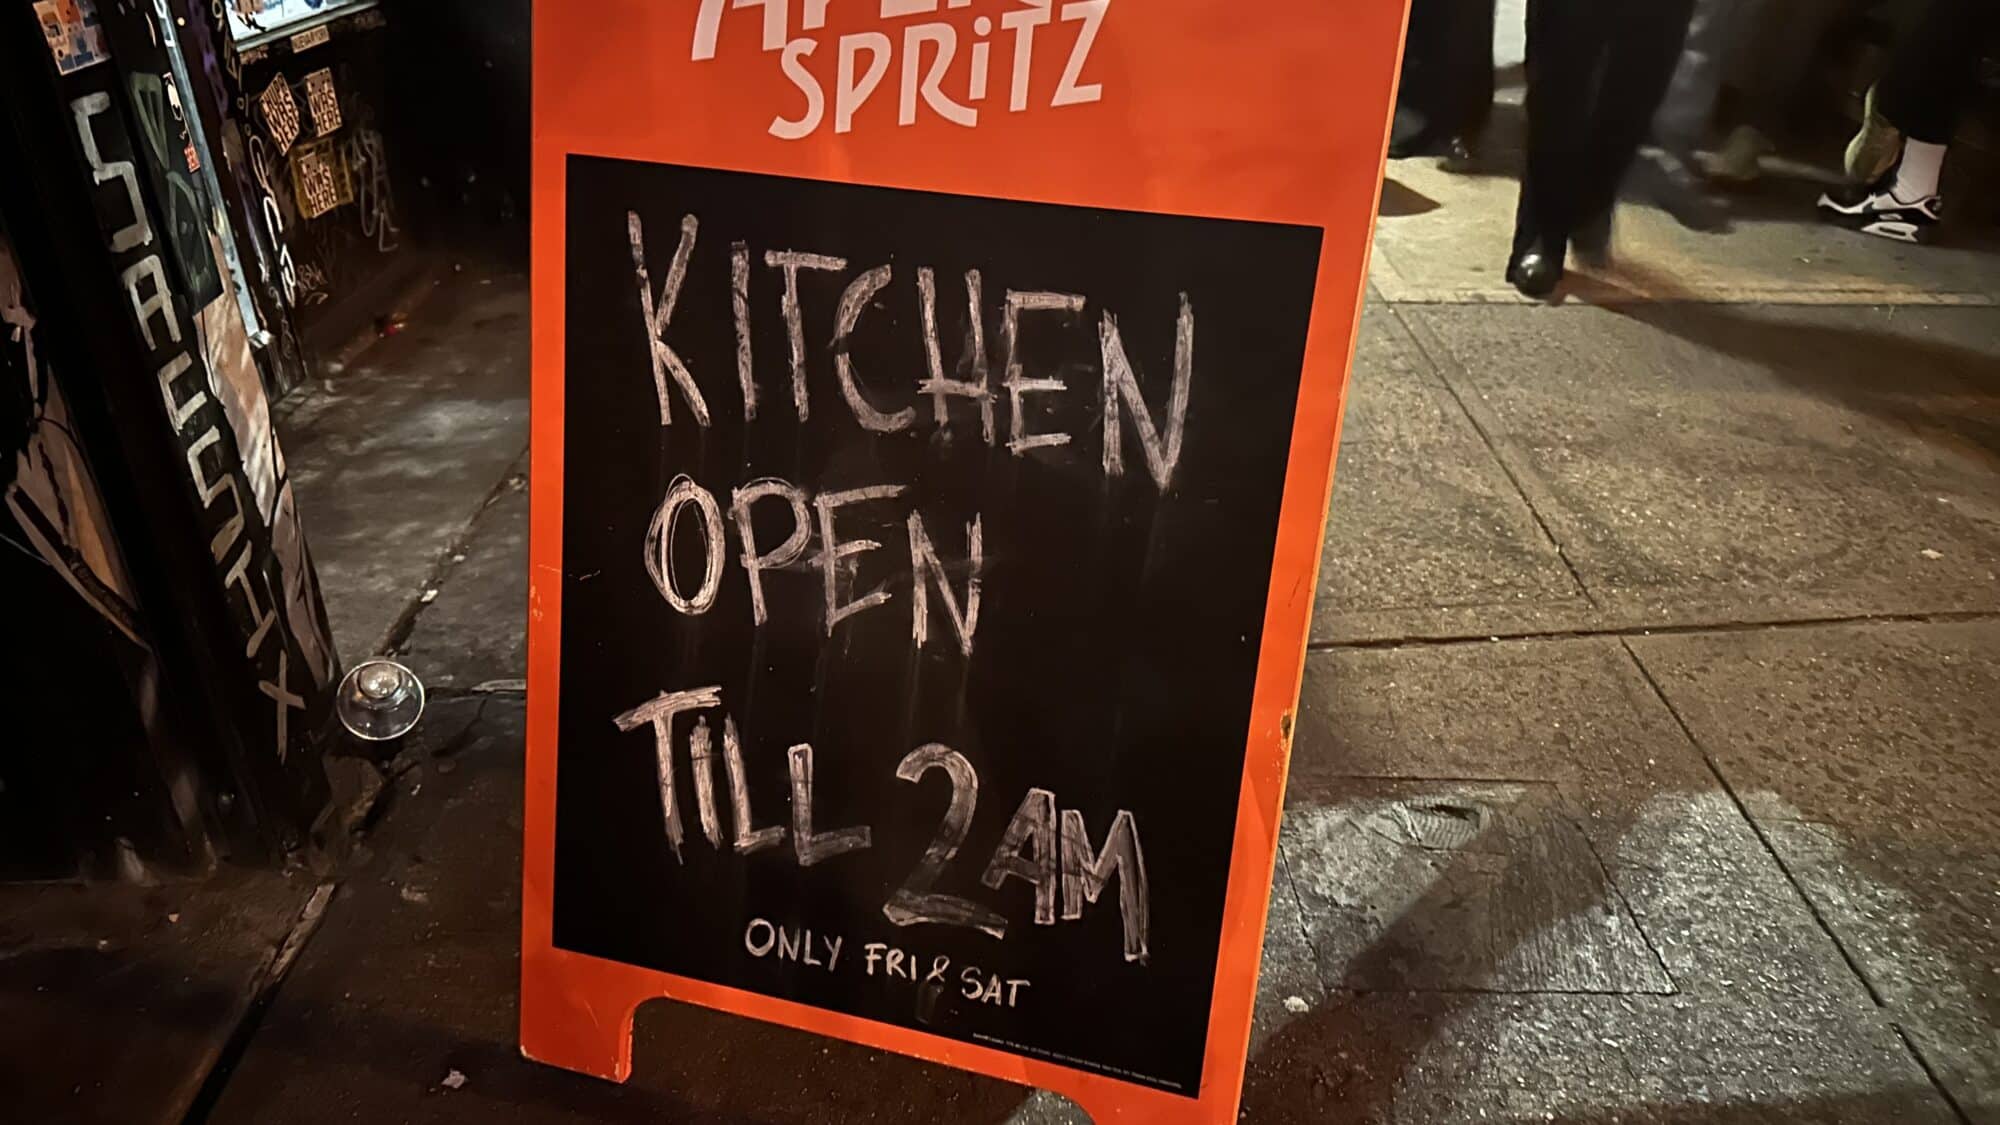 Bar sign that reads "KITCHEN OPEN TIL 2AM"